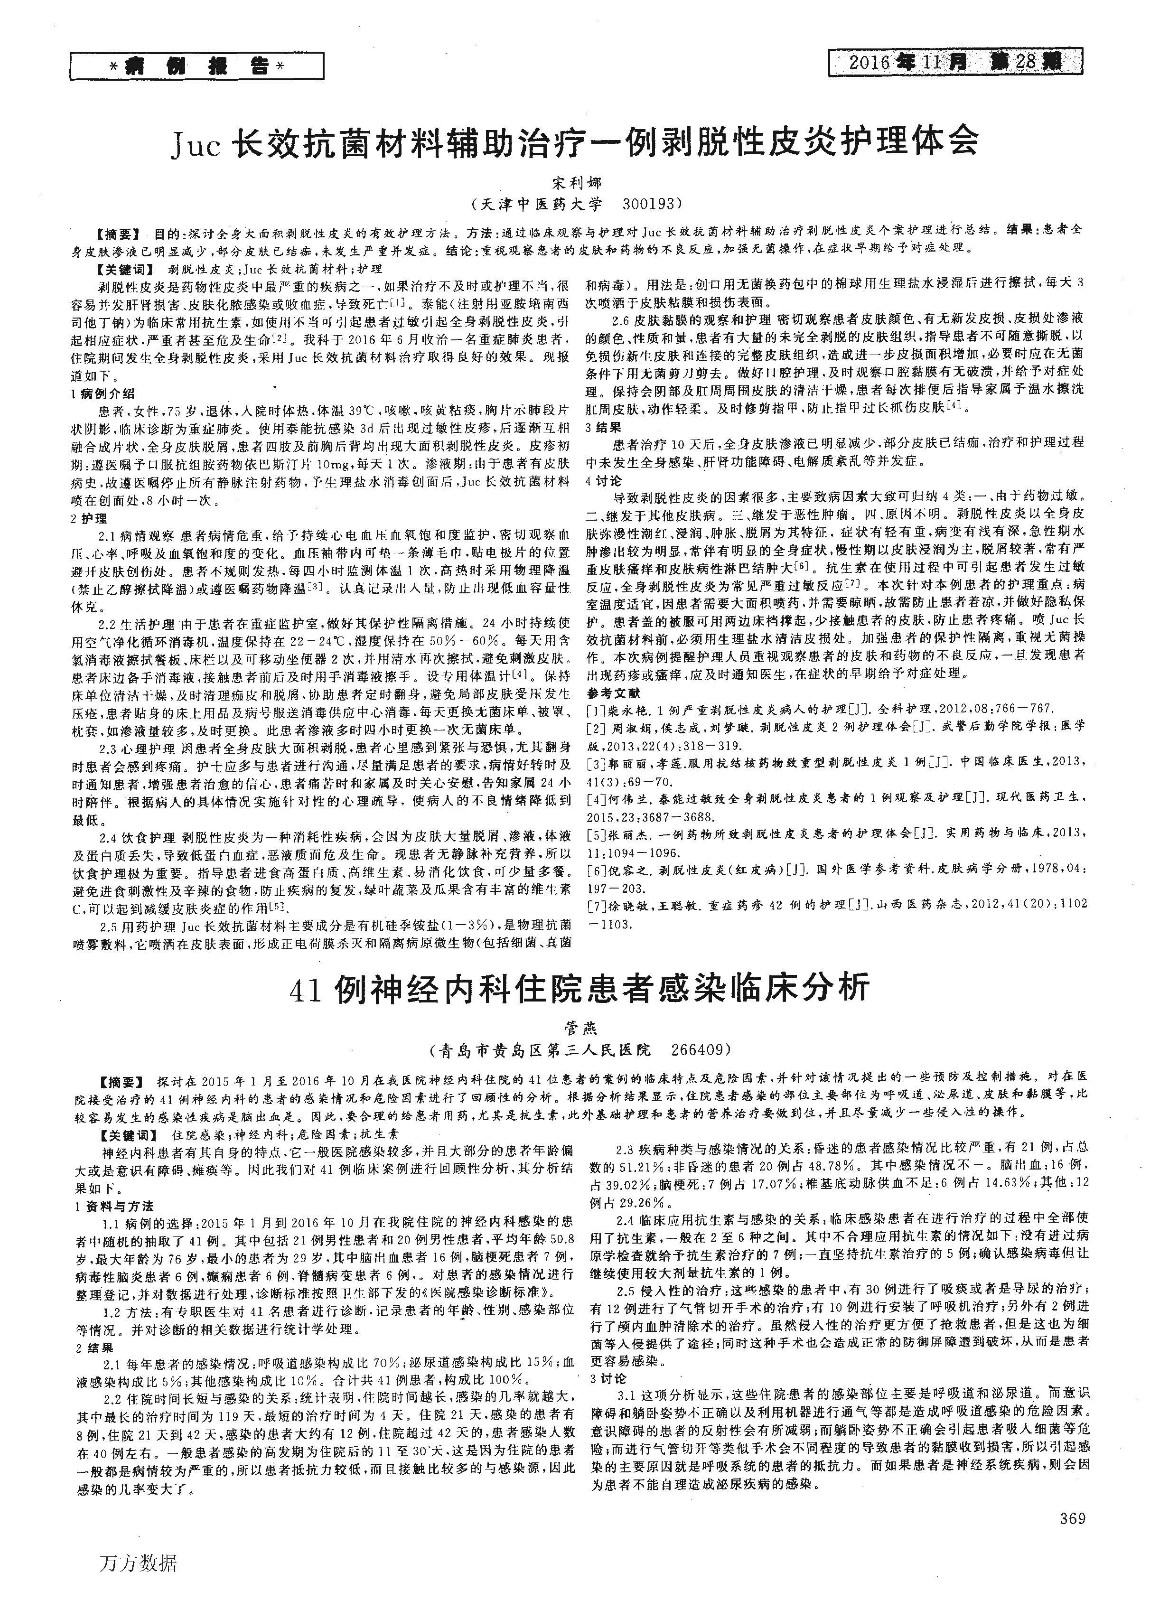 Juc长效抗菌材料辅助治疗一例剥脱性皮炎护理体会.jpg